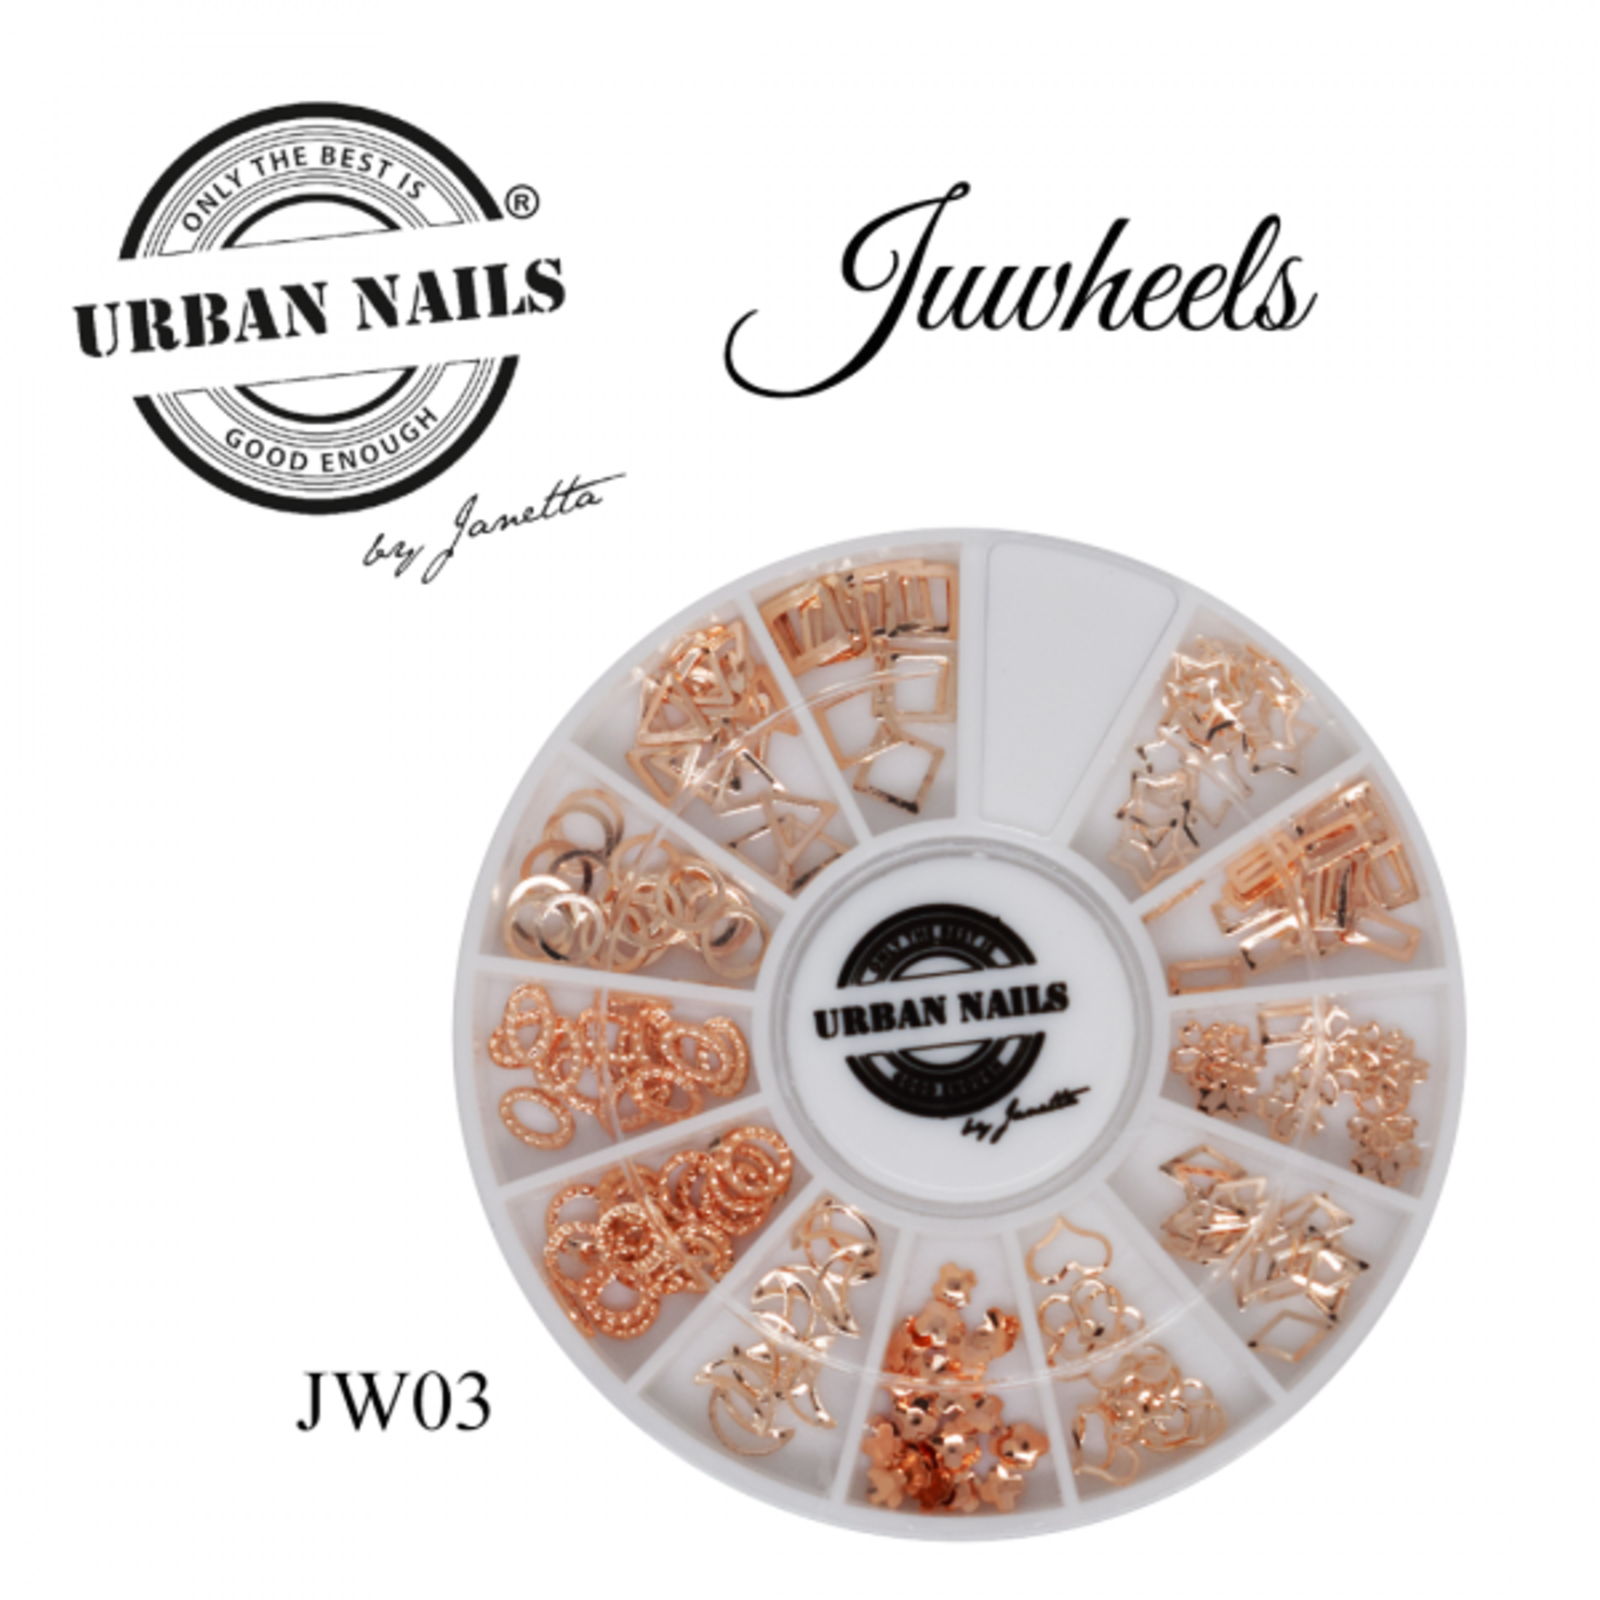 Urban nails Juwheel 03